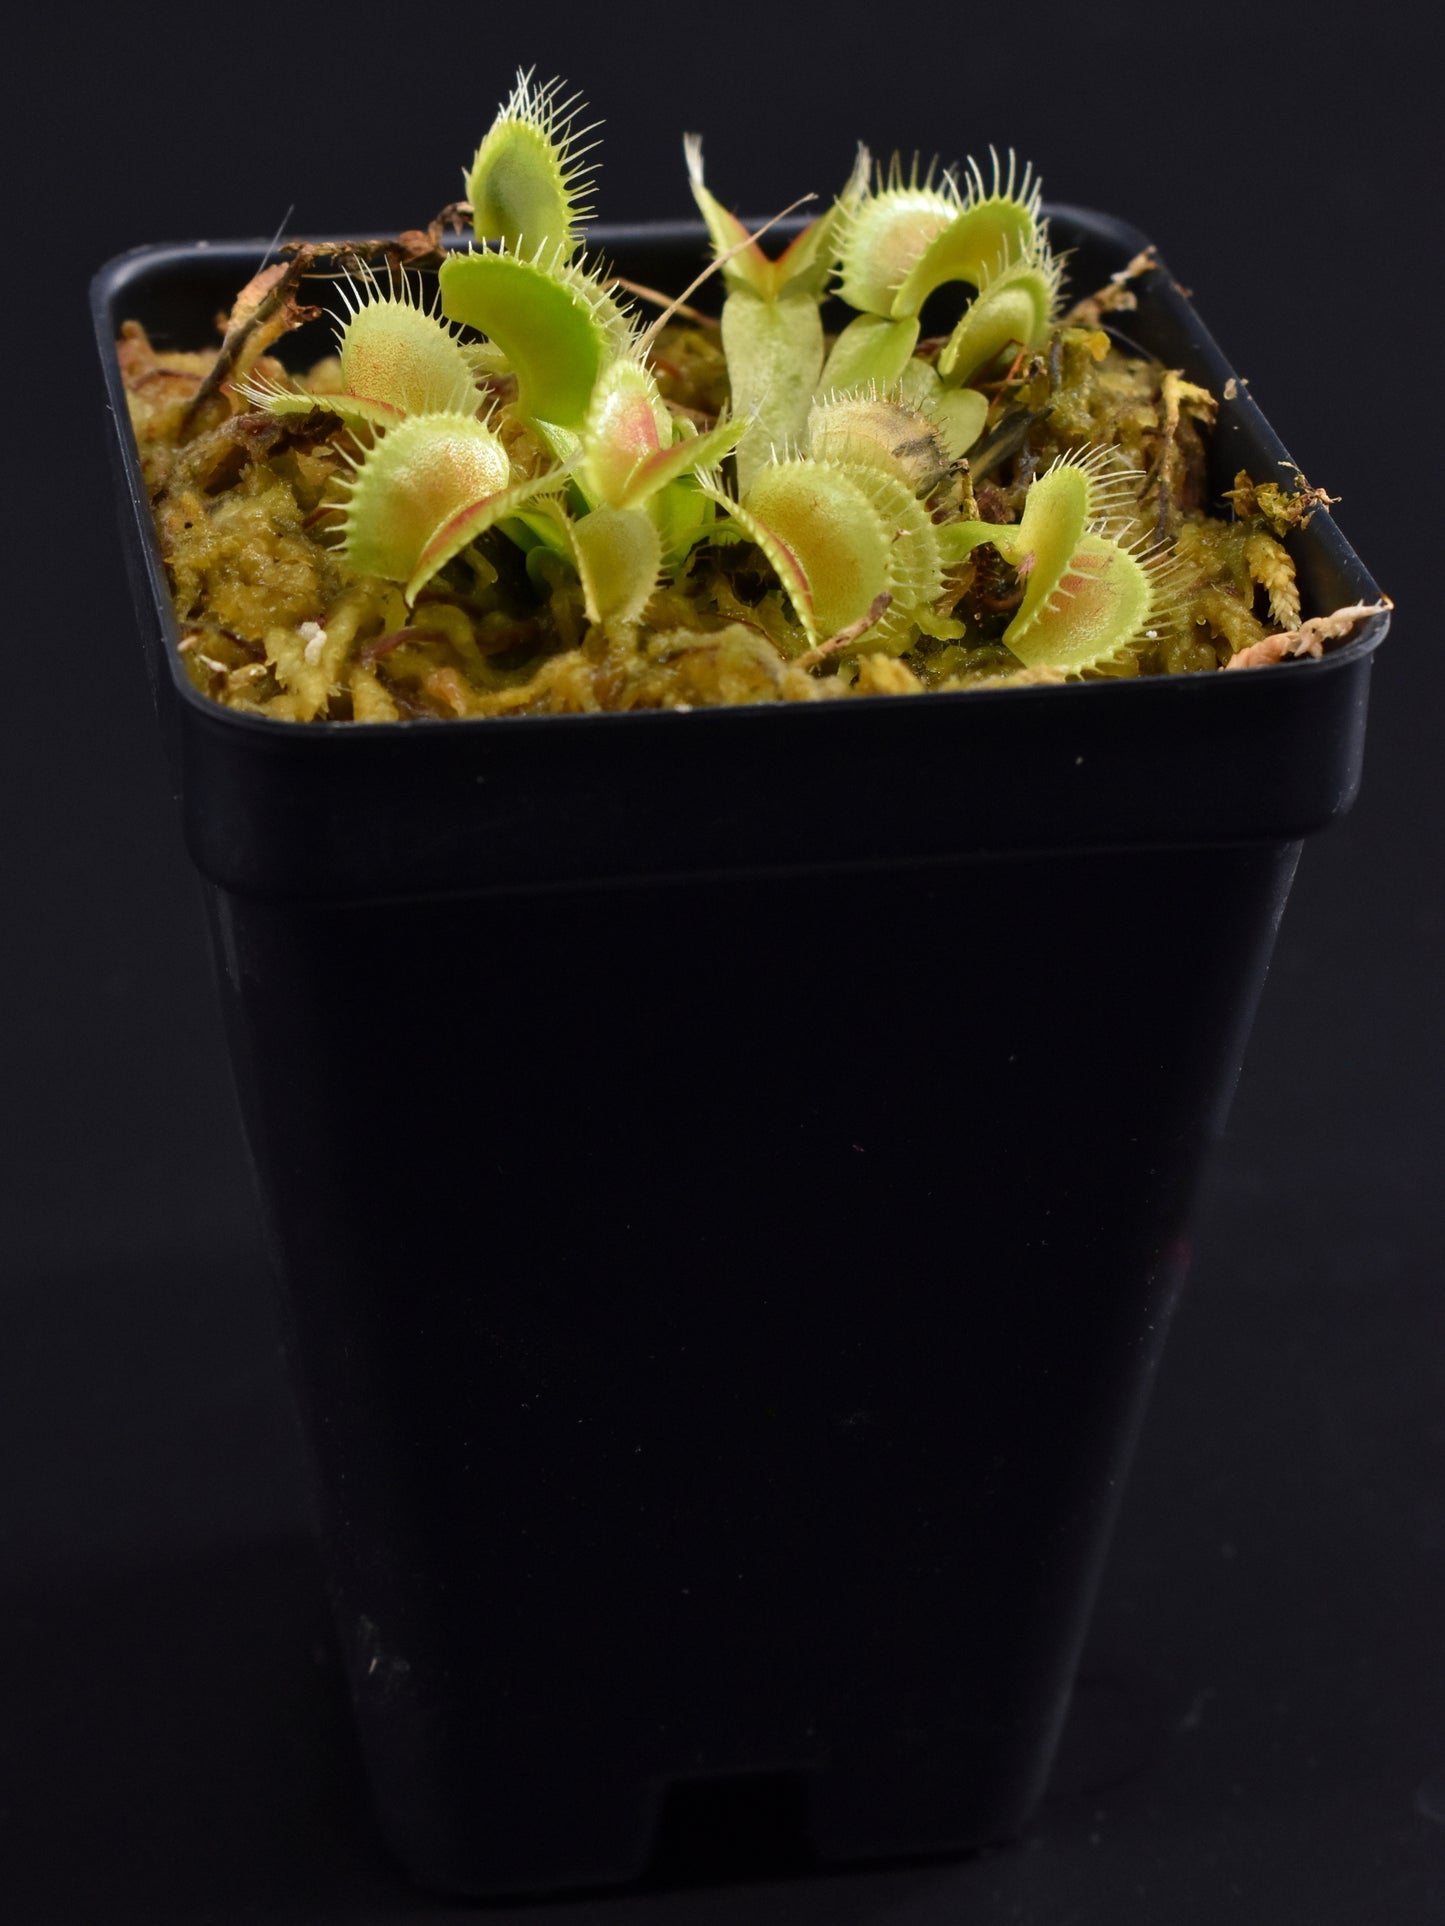 Dionaea muscipula The Venus Flytrap